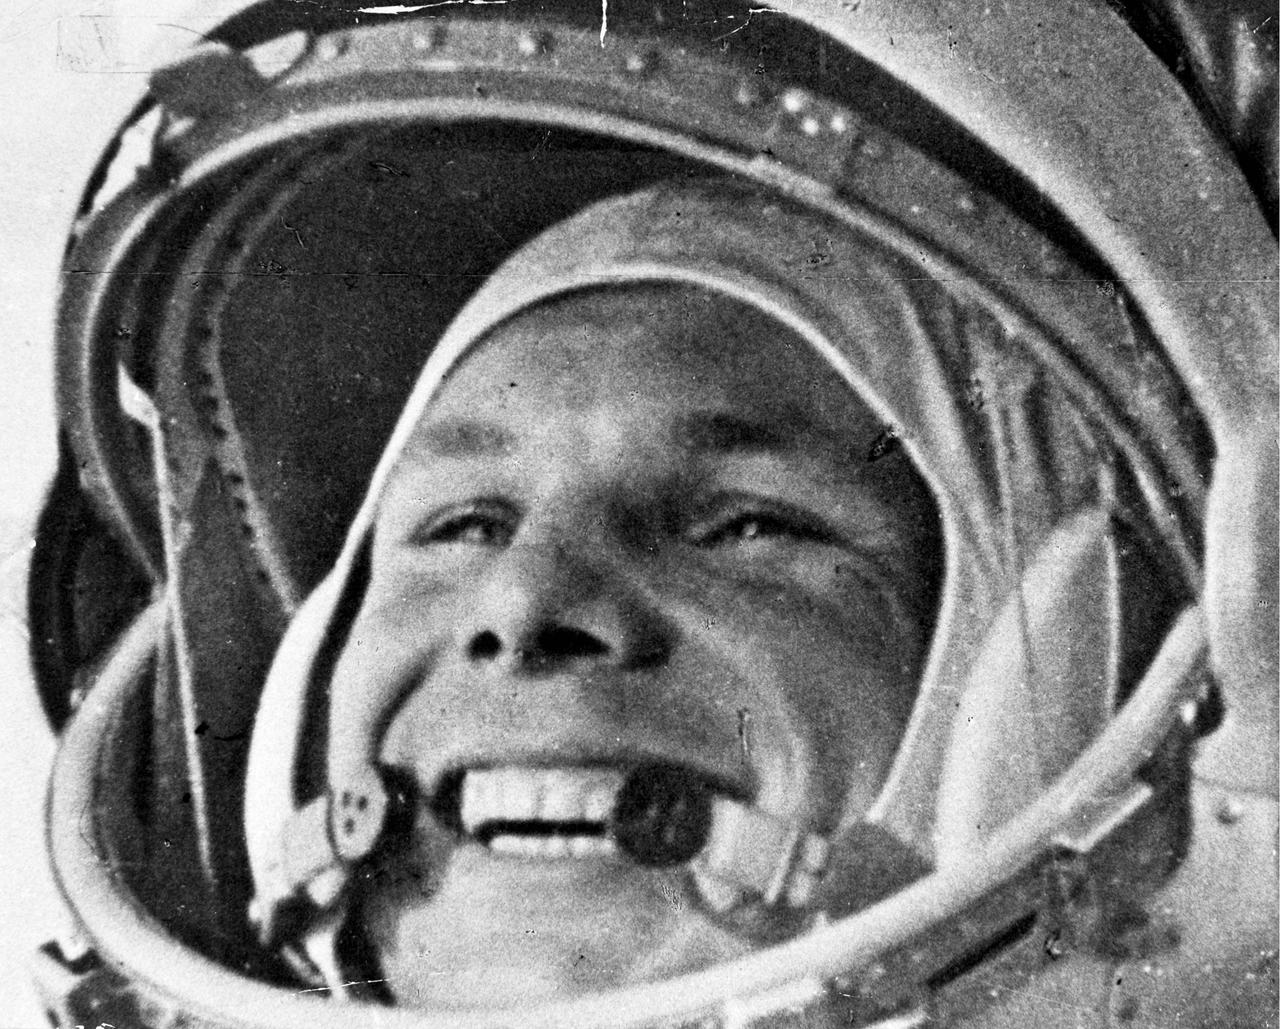 Der erste Mensch im All – kein Brite und gut zehn Jahre später: Juri Gagarin auf dem Weg zum Start 1961 